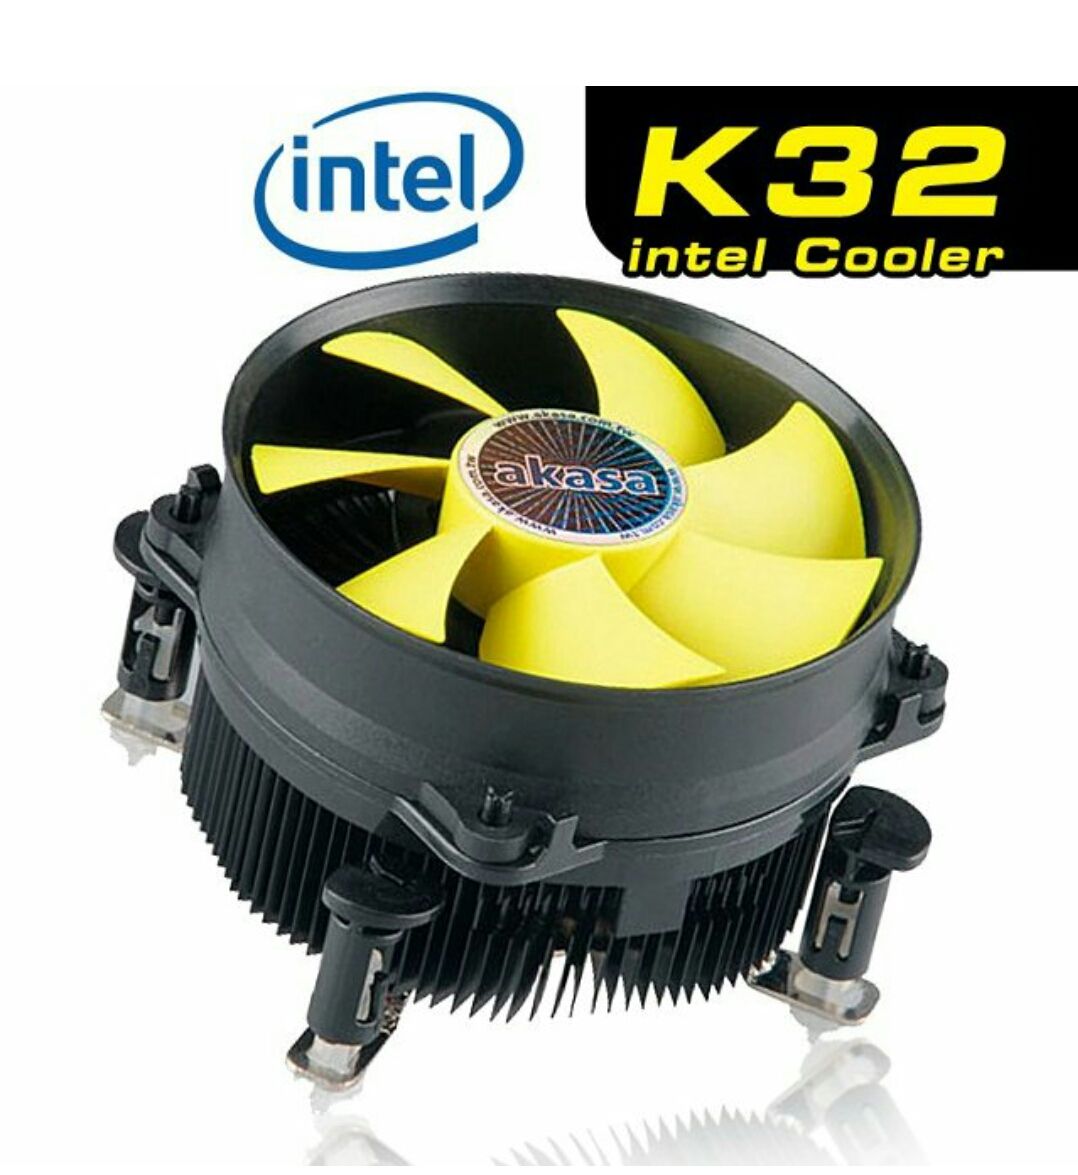 Xeon E5450 için 100 TL fan önerisi | Technopat Sosyal